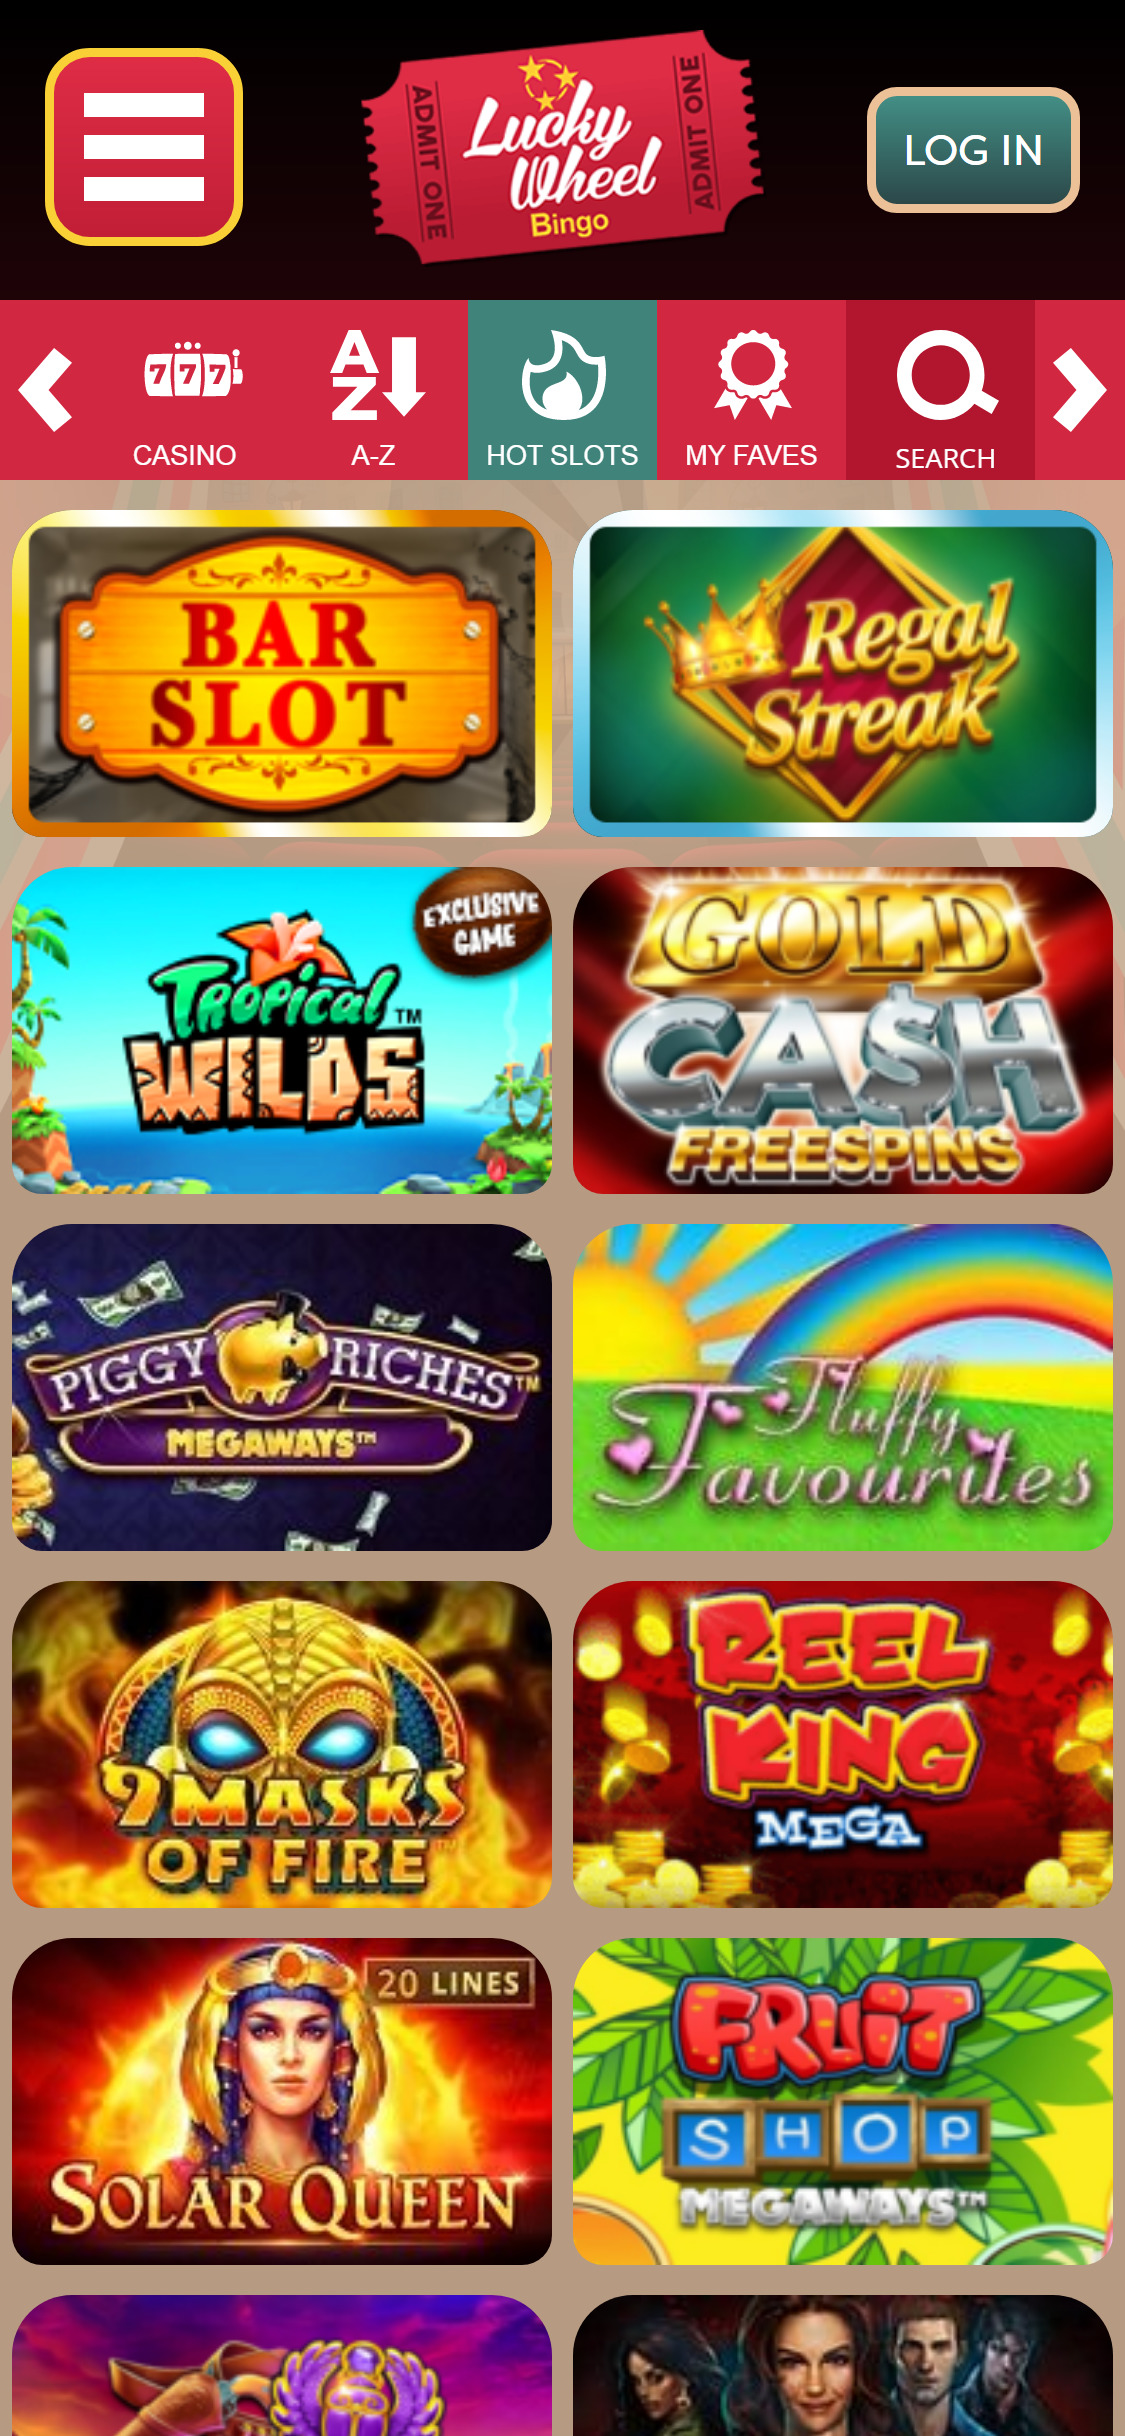 Lucky Wheel Bingo Casino Mobile Games Review